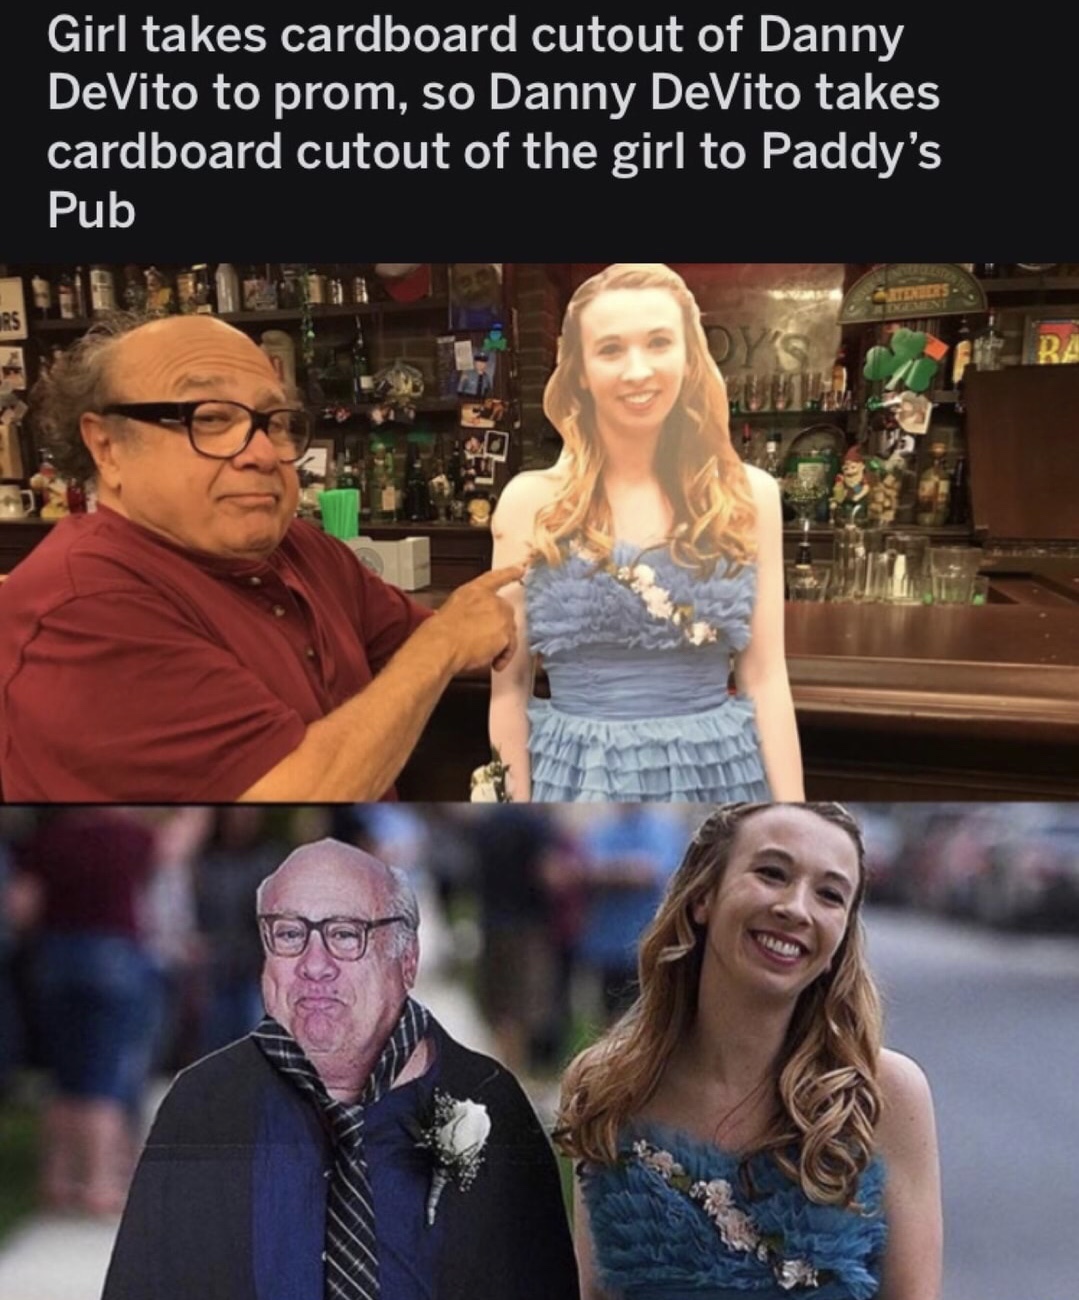 danny devito prom - Girl takes cardboard cutout of Danny DeVito to prom, so Danny DeVito takes cardboard cutout of the girl to Paddy's Pub Ba